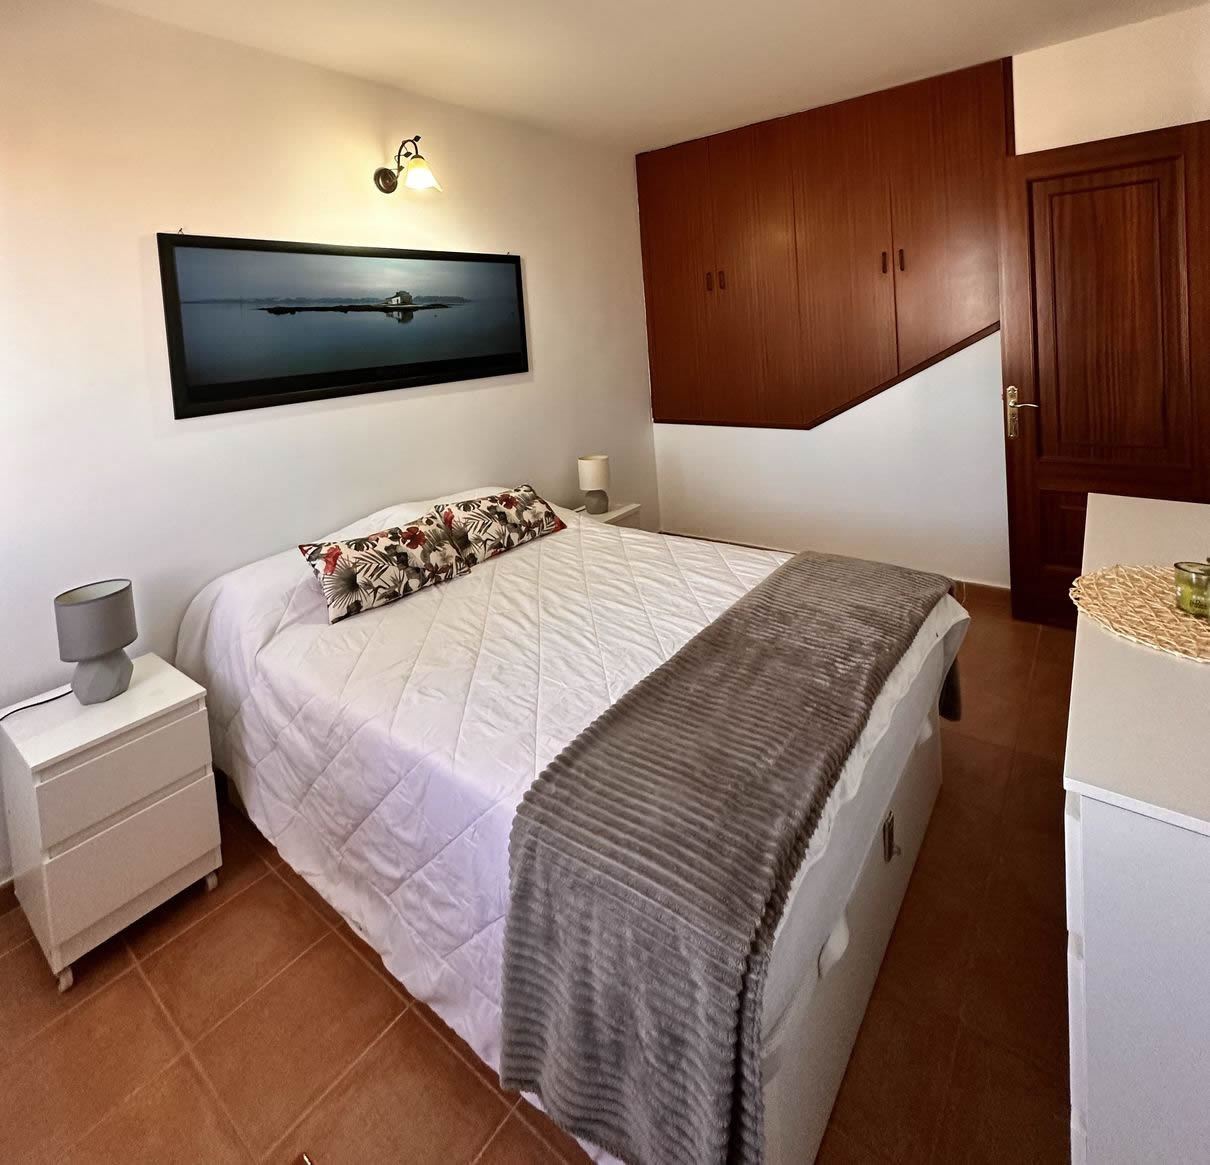 La Casita Fuerteventura - Camera da letto